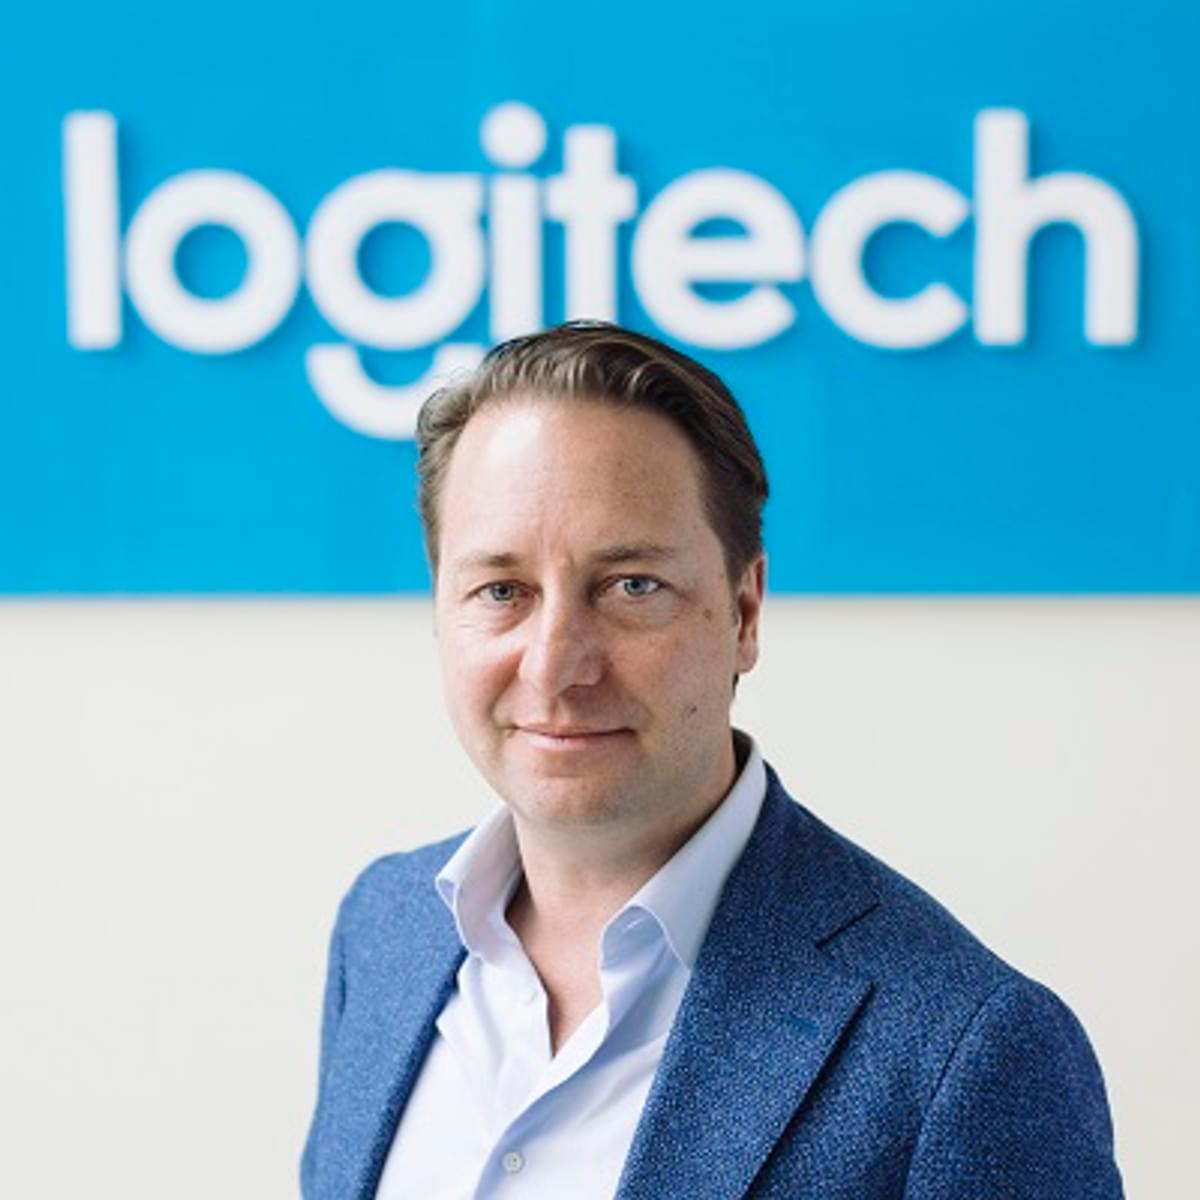 Logitech gaat strategische samenwerking aan met Samsung image